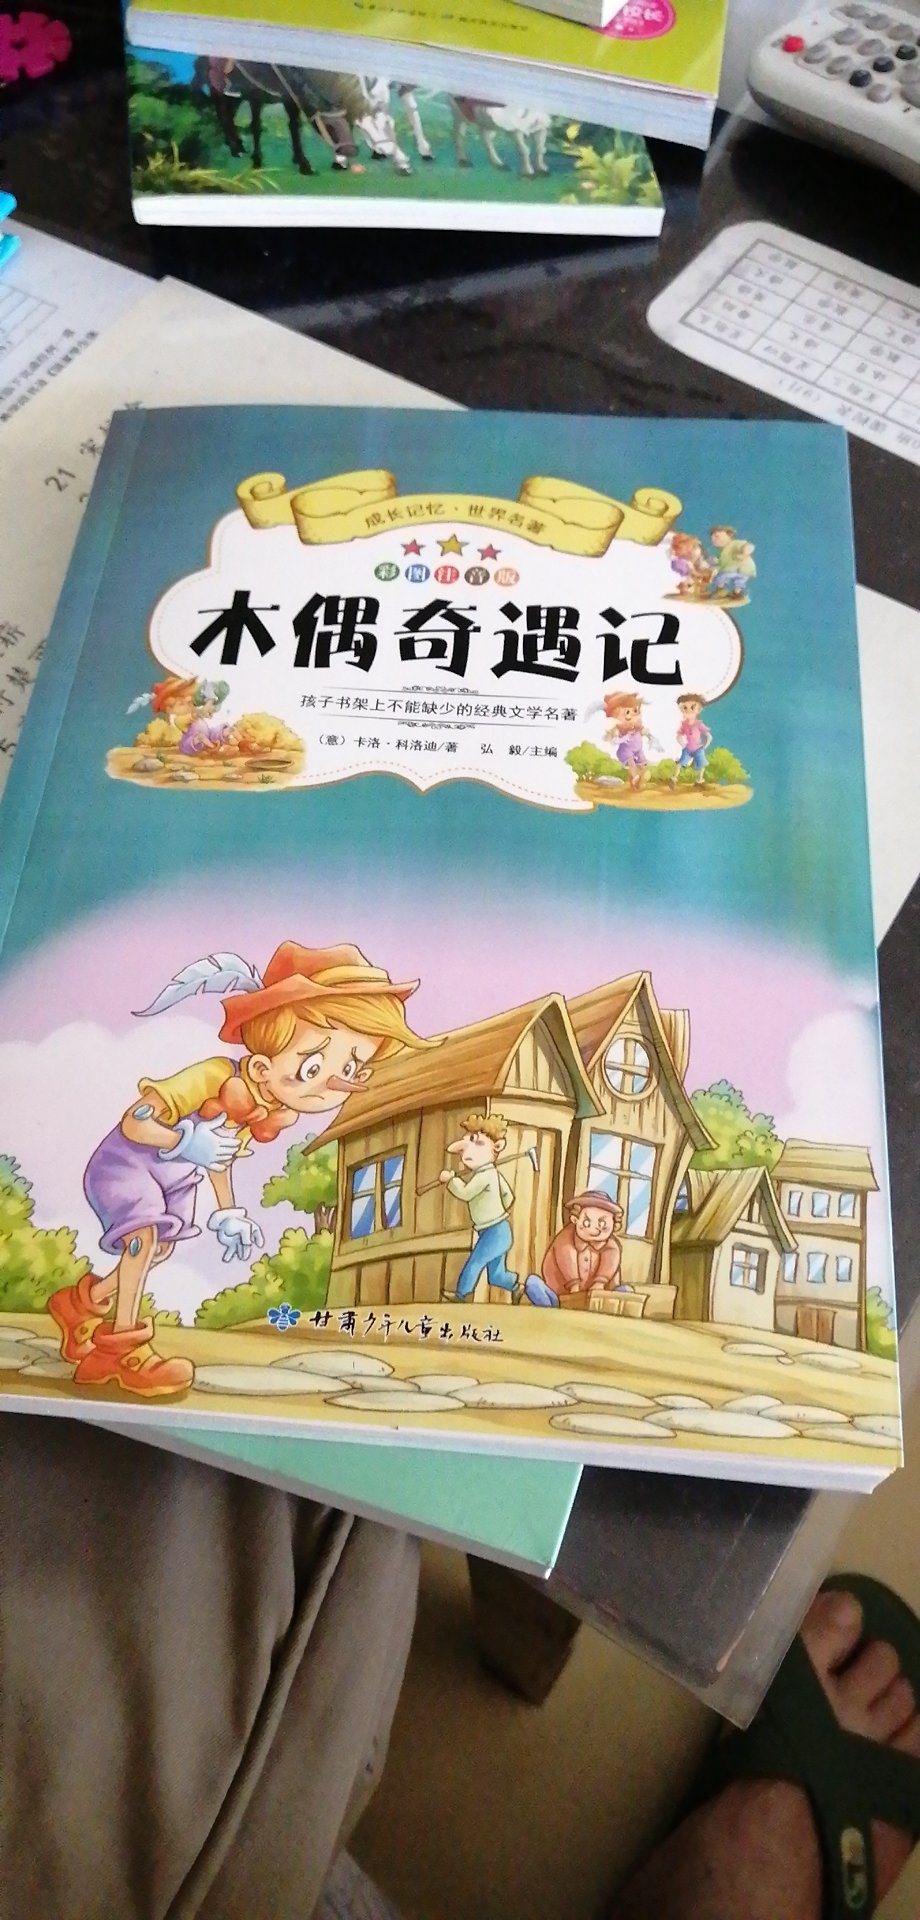 有汉语拼音，小学生可以自己看，拿到书，刚上一年级的孩子就翻看起来了。满意！